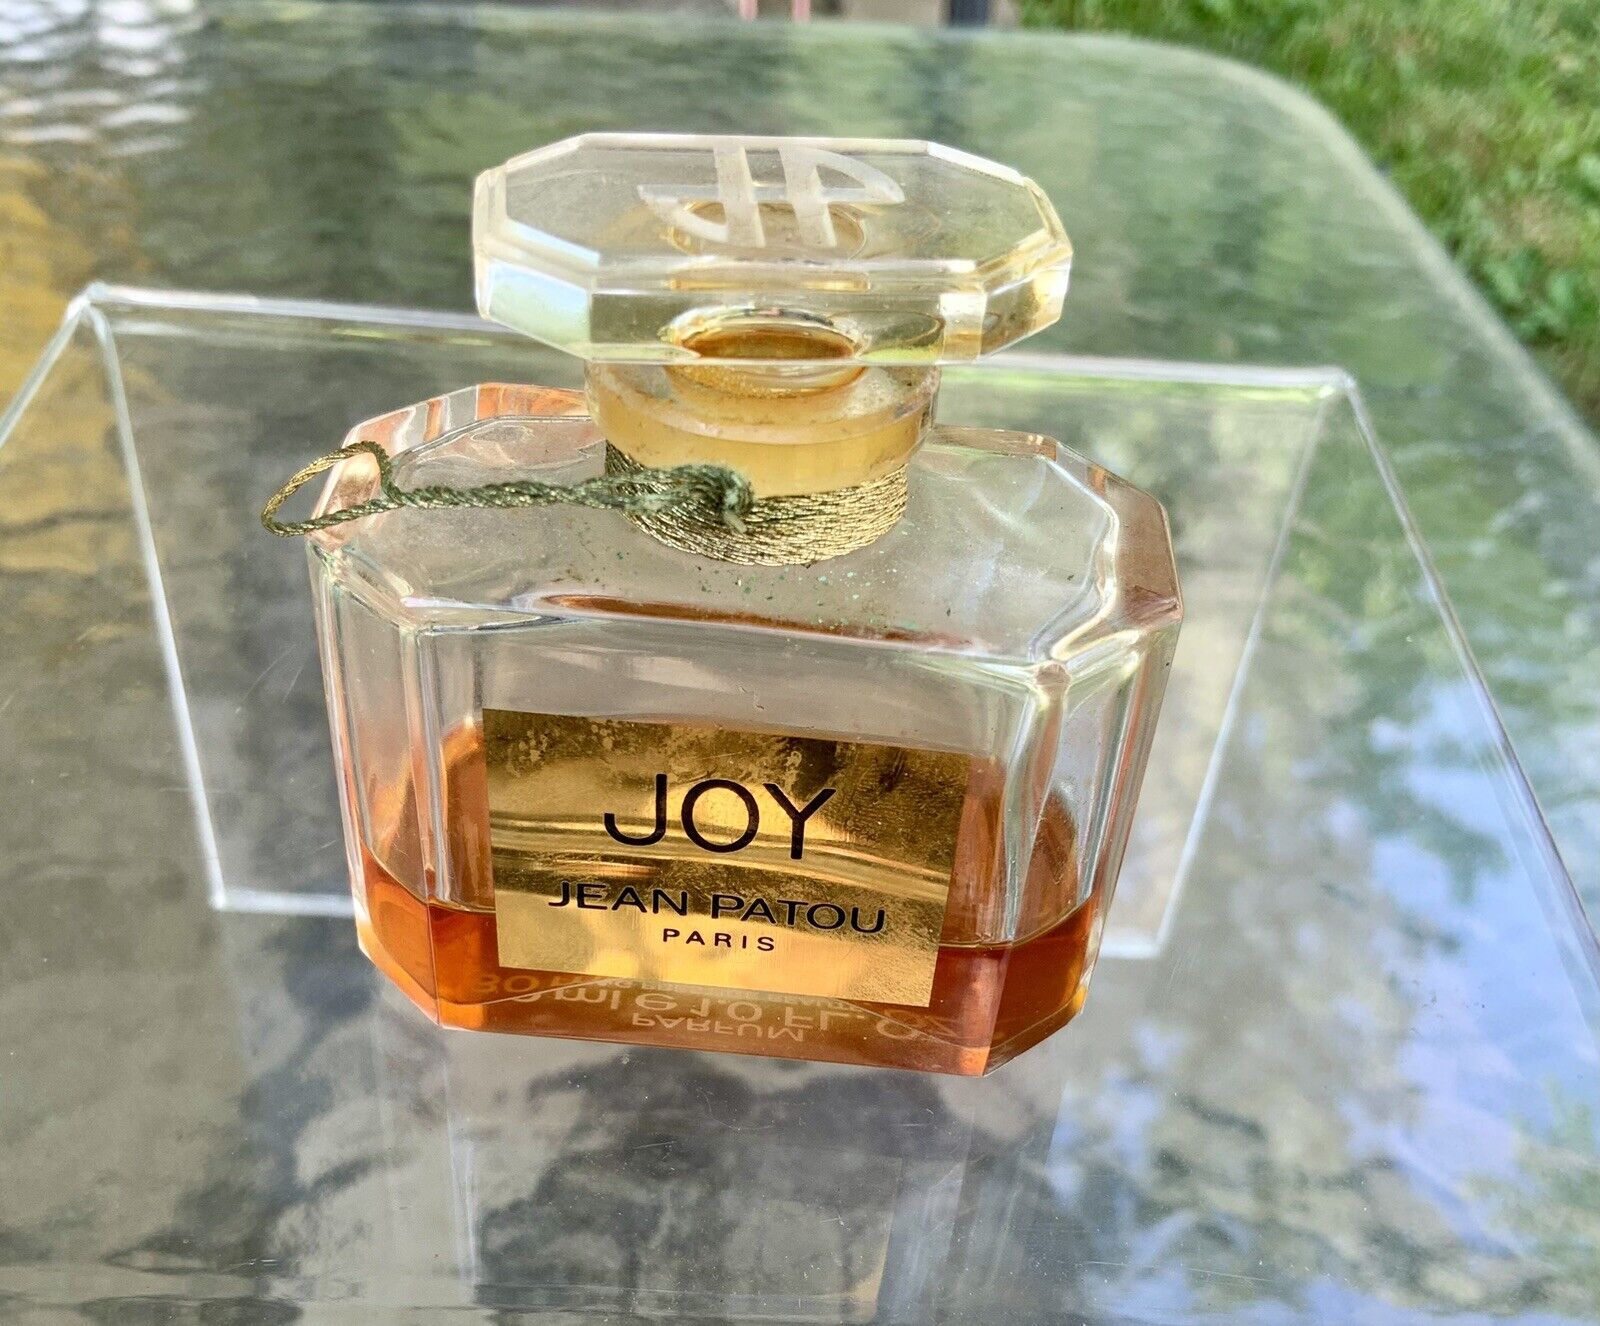 Jean Patou Paris Joy Perfume Crystal Bottle 1 Oz